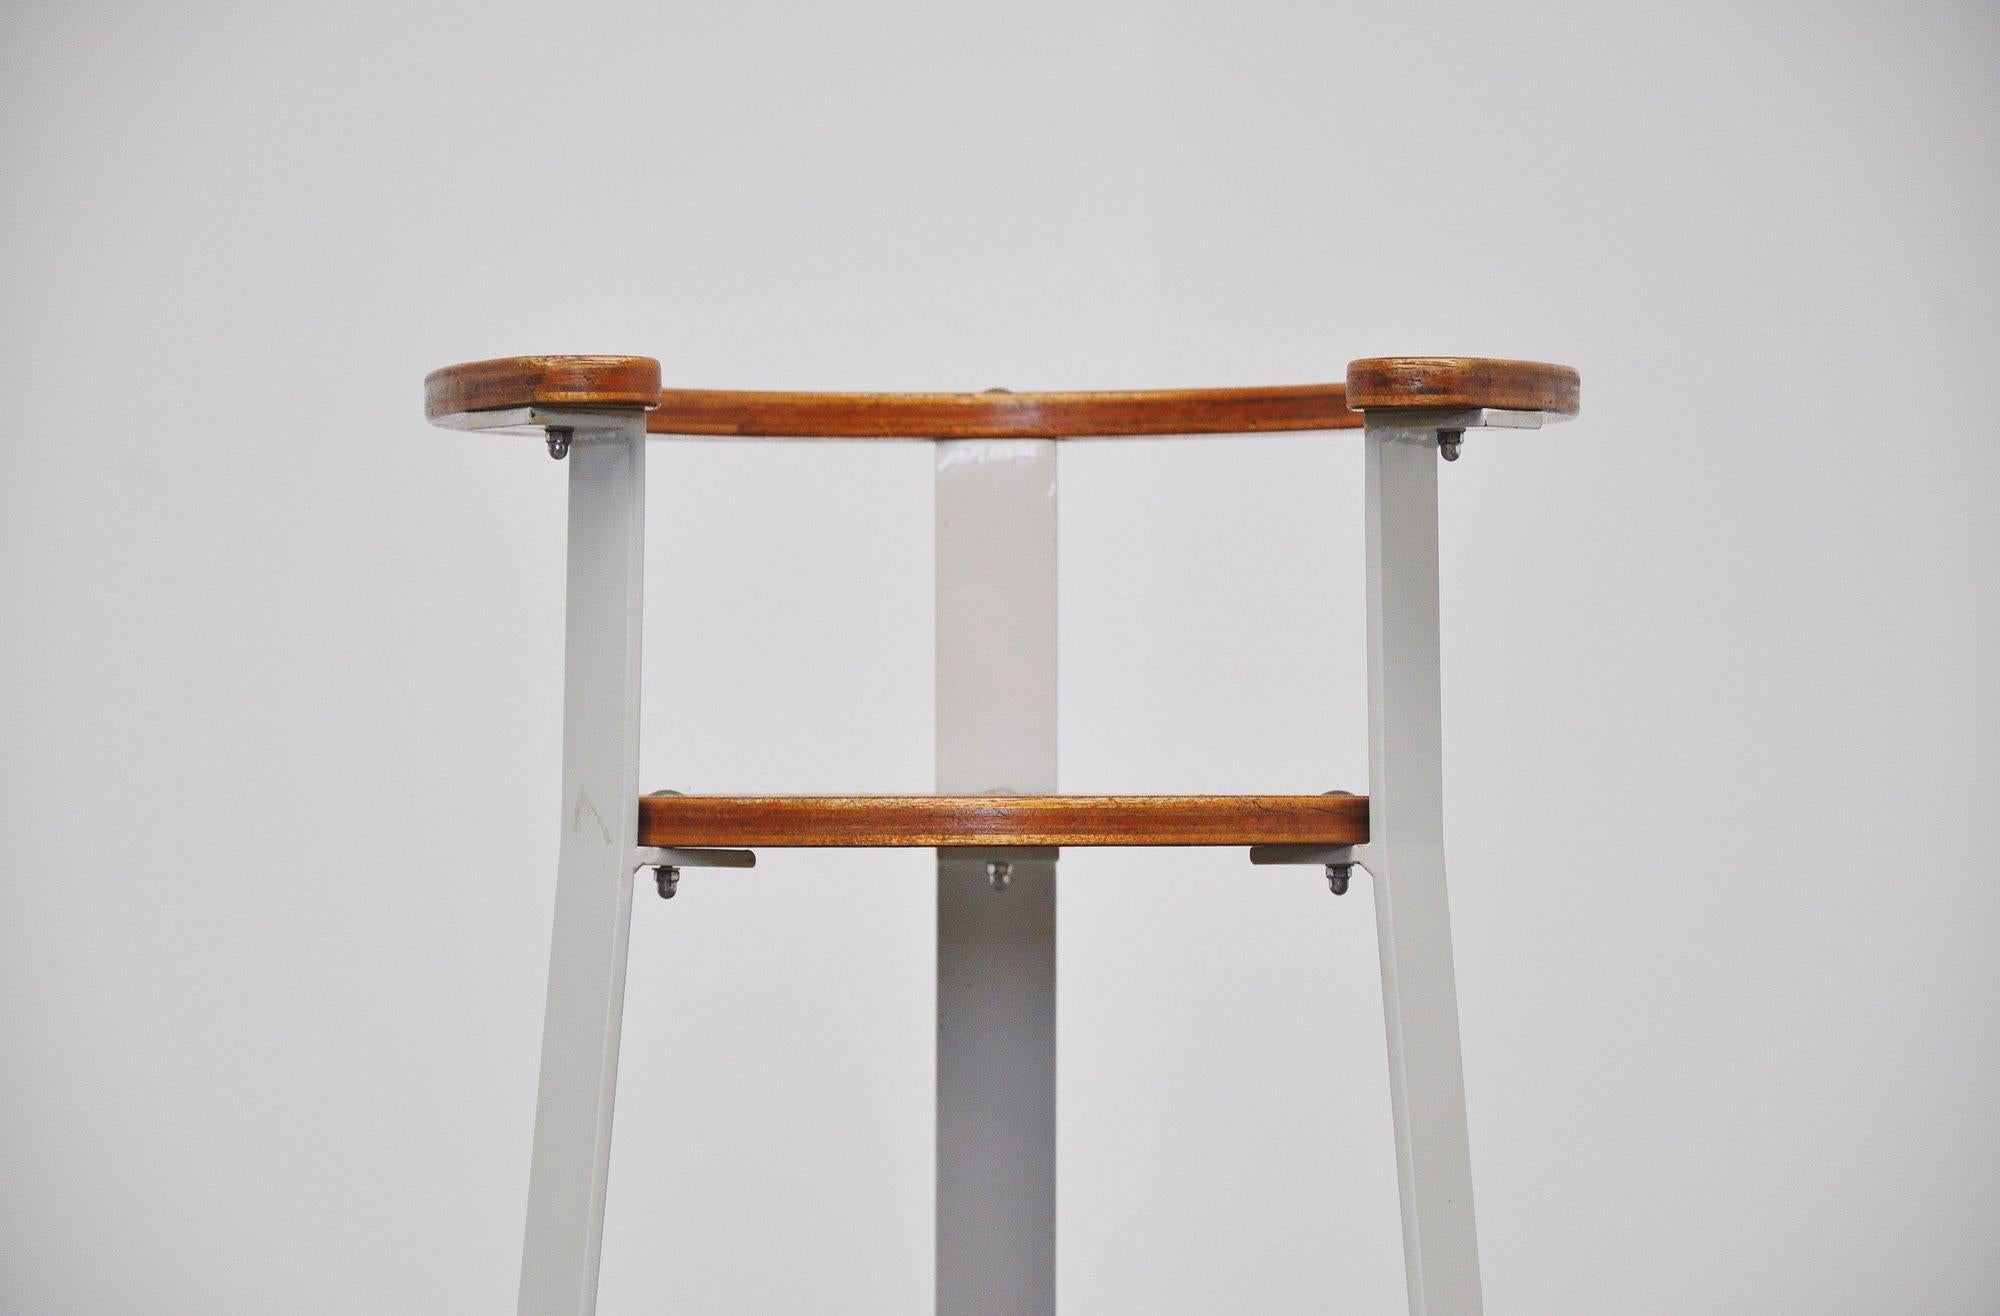 Super eleganter hoher Kinderstuhl, entworfen vom niederländischen Architekten Gunnar Daan, Holland, 1966. Dieser Stuhl wurde von Gunnar Daan entworfen und für seine eigenen Kinder hergestellt. Später wurde dies von Metz & Co. in die Produktion